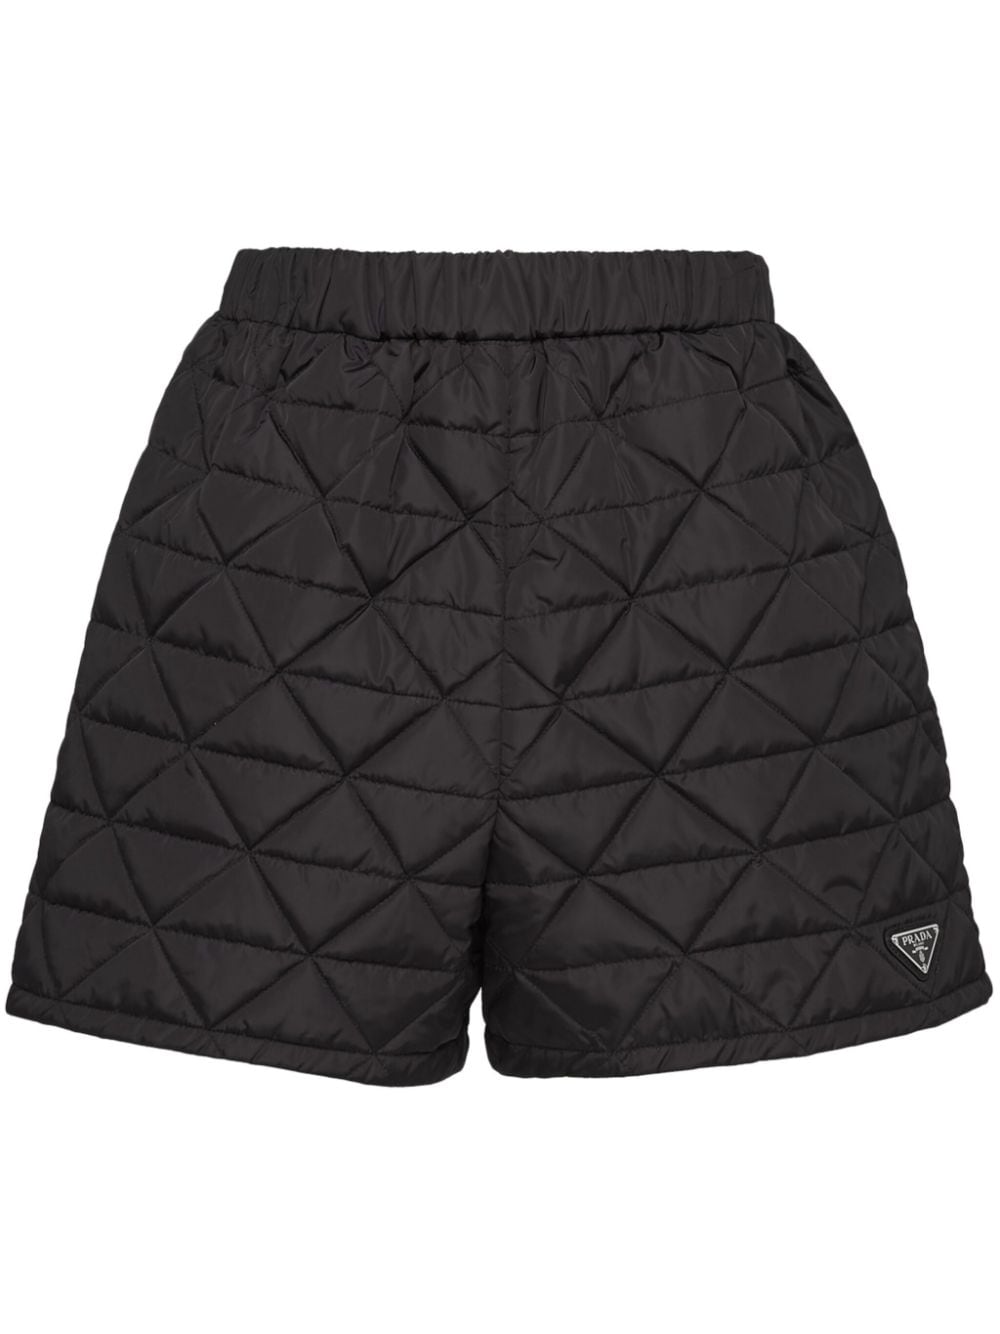 Prada Re-nylon Shorts In Black